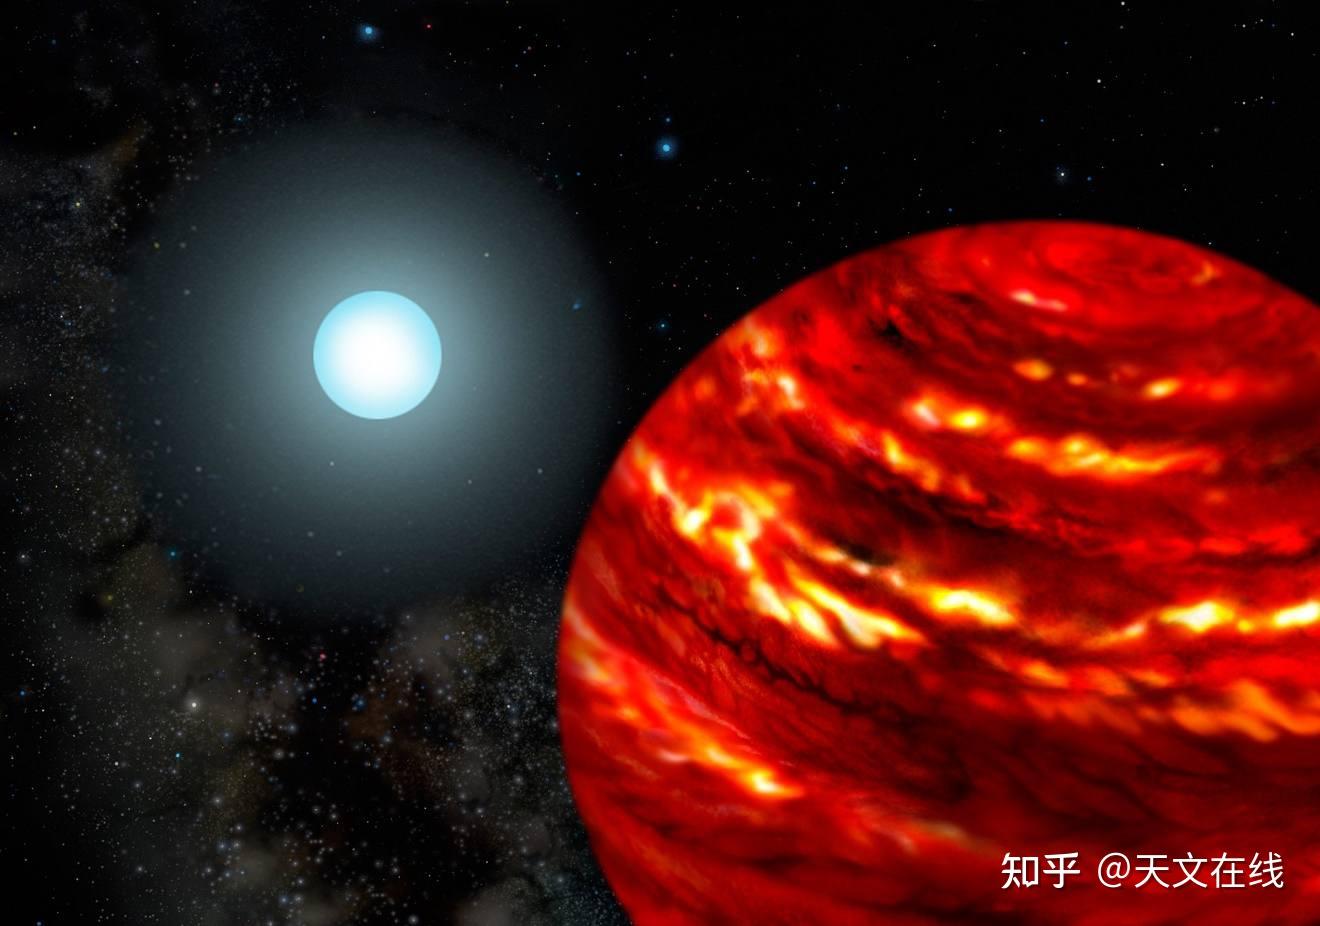 天文学家首次展示了一颗类日恒星周围行星的直接图像